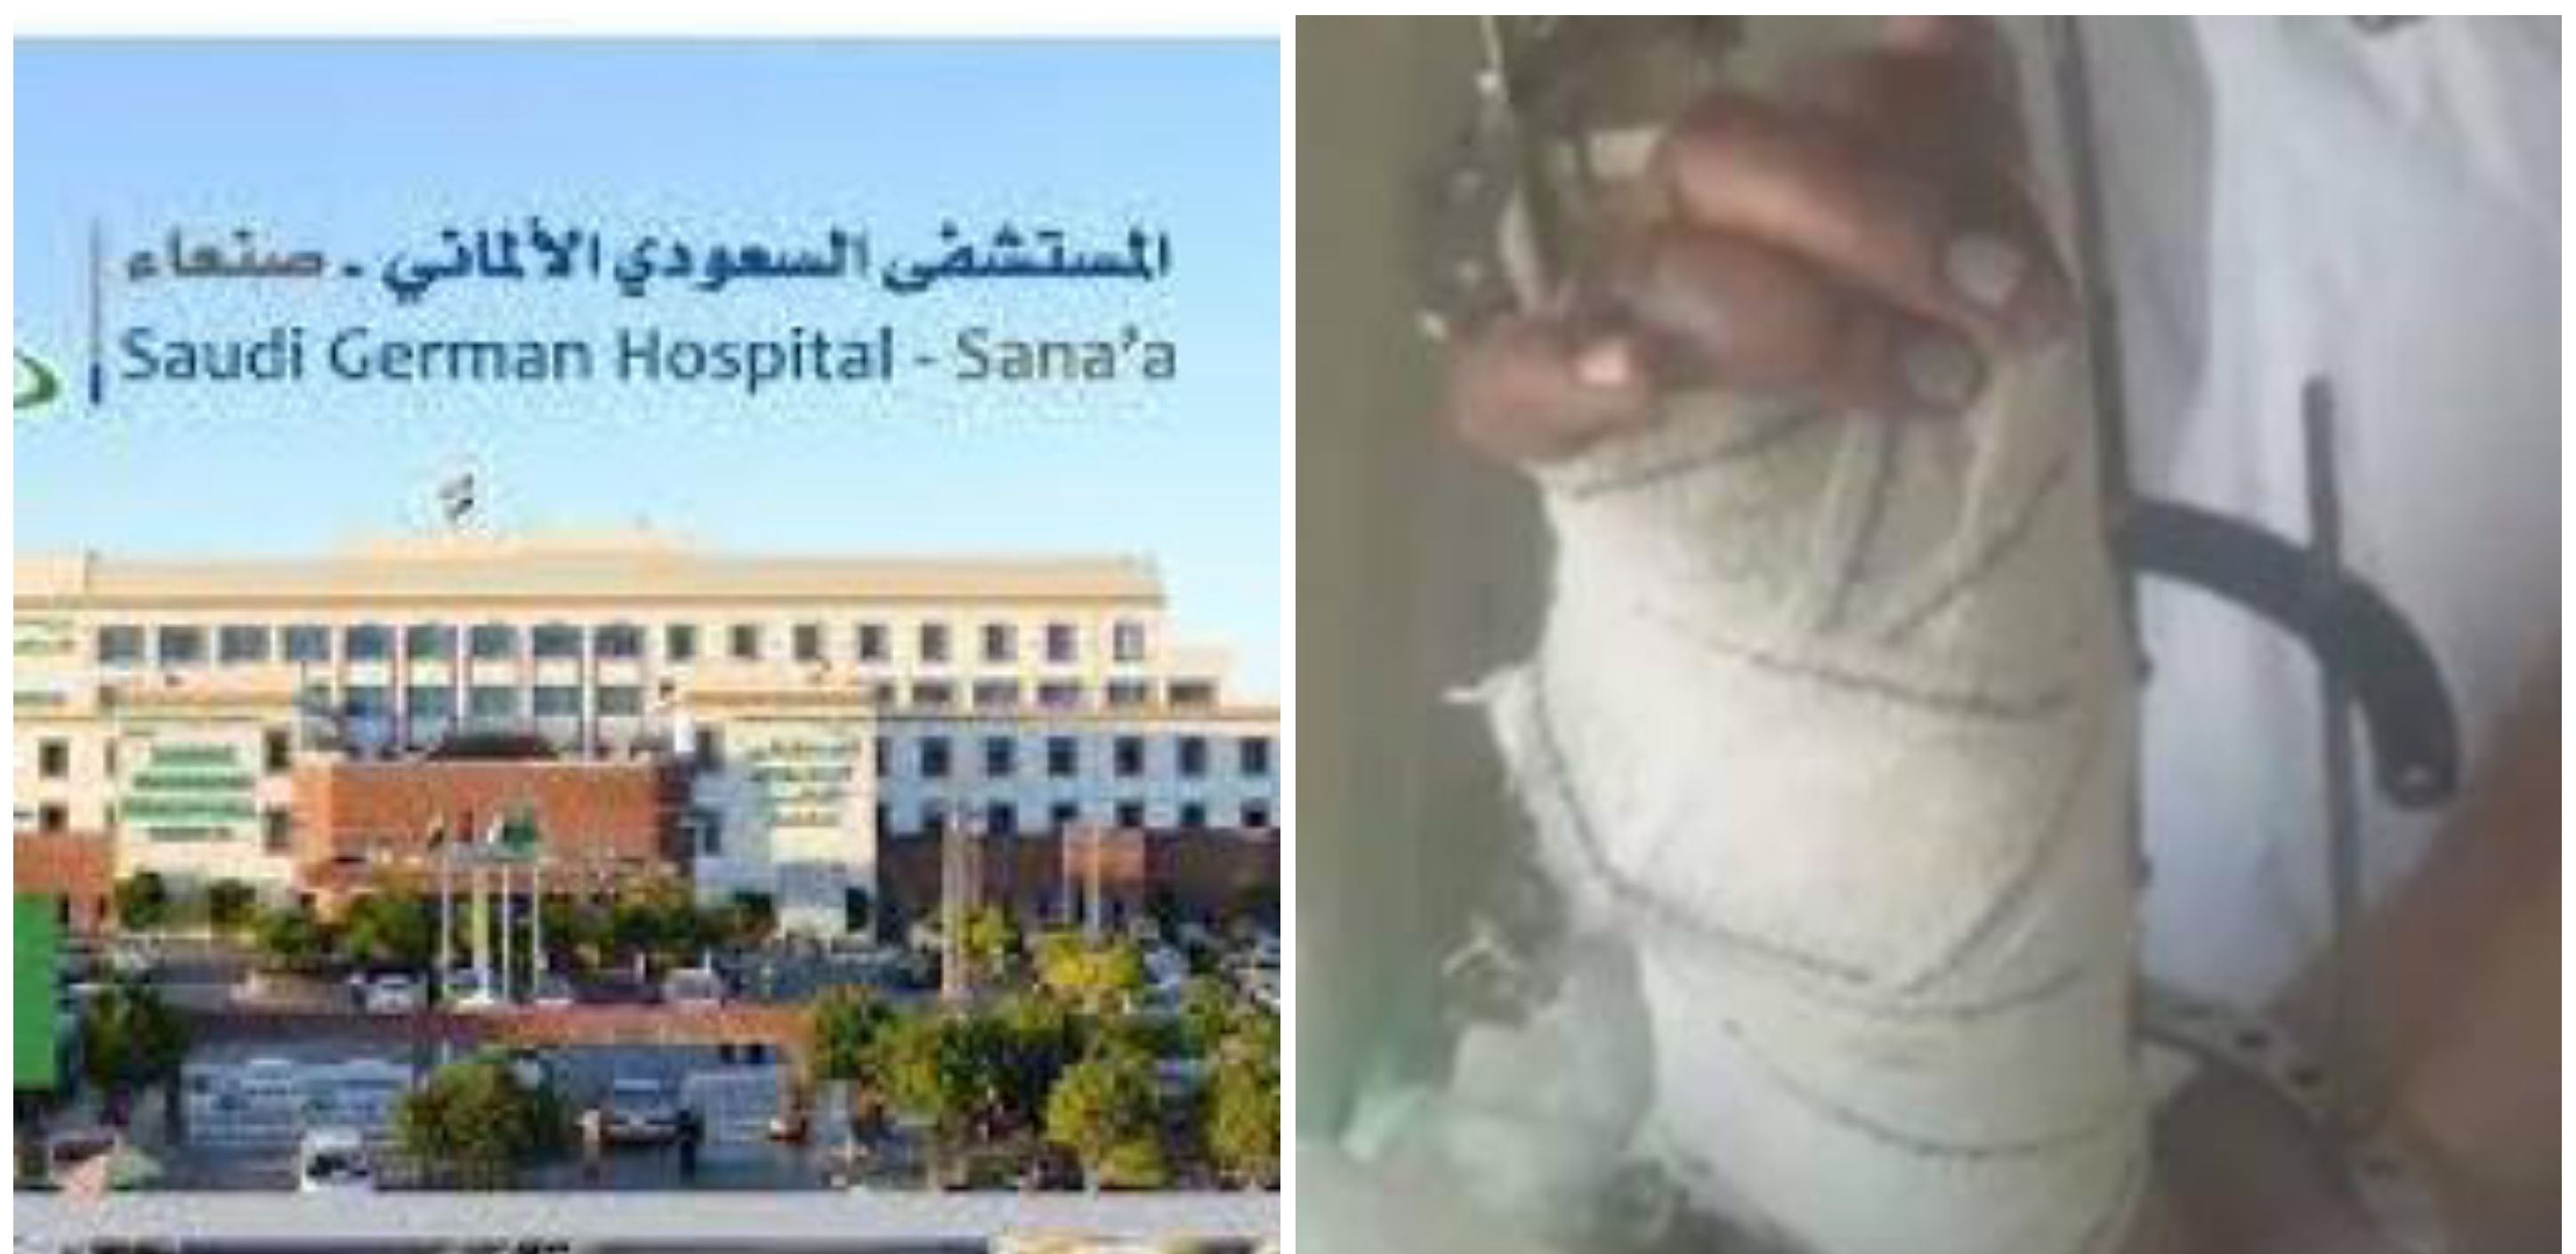 لأول مرة في اليمن فريق طبي ينجح في زراعة يد مبتورة بالمستشفى السعودي الألماني بصنعاء صورة